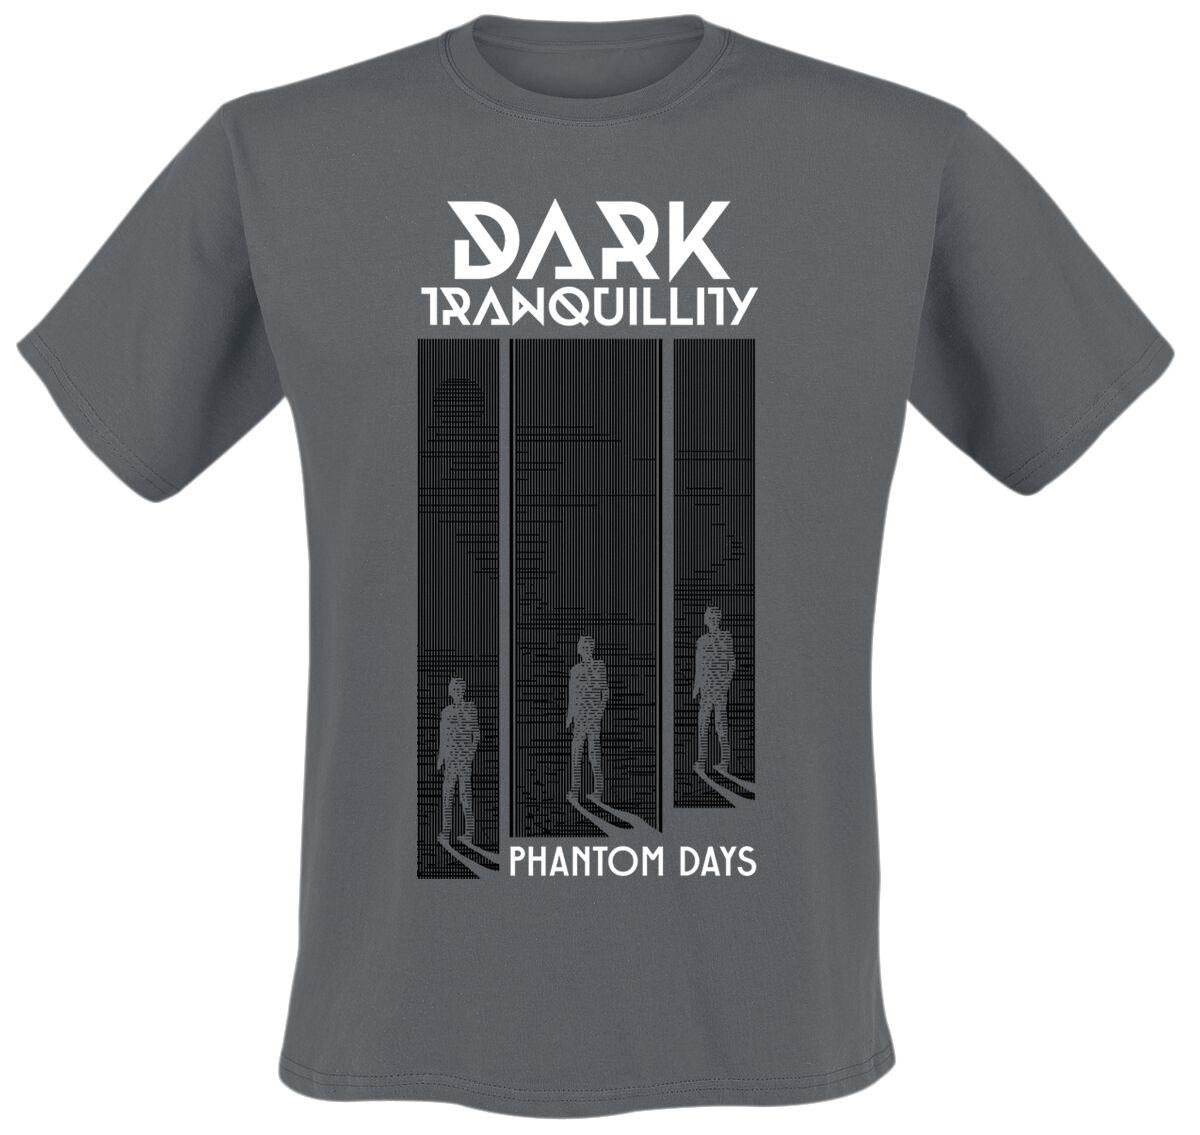 Dark Tranquillity T-Shirt - Phantom Days - S bis XXL - für Männer - Größe L - dunkelgrau  - EMP exklusives Merchandise!